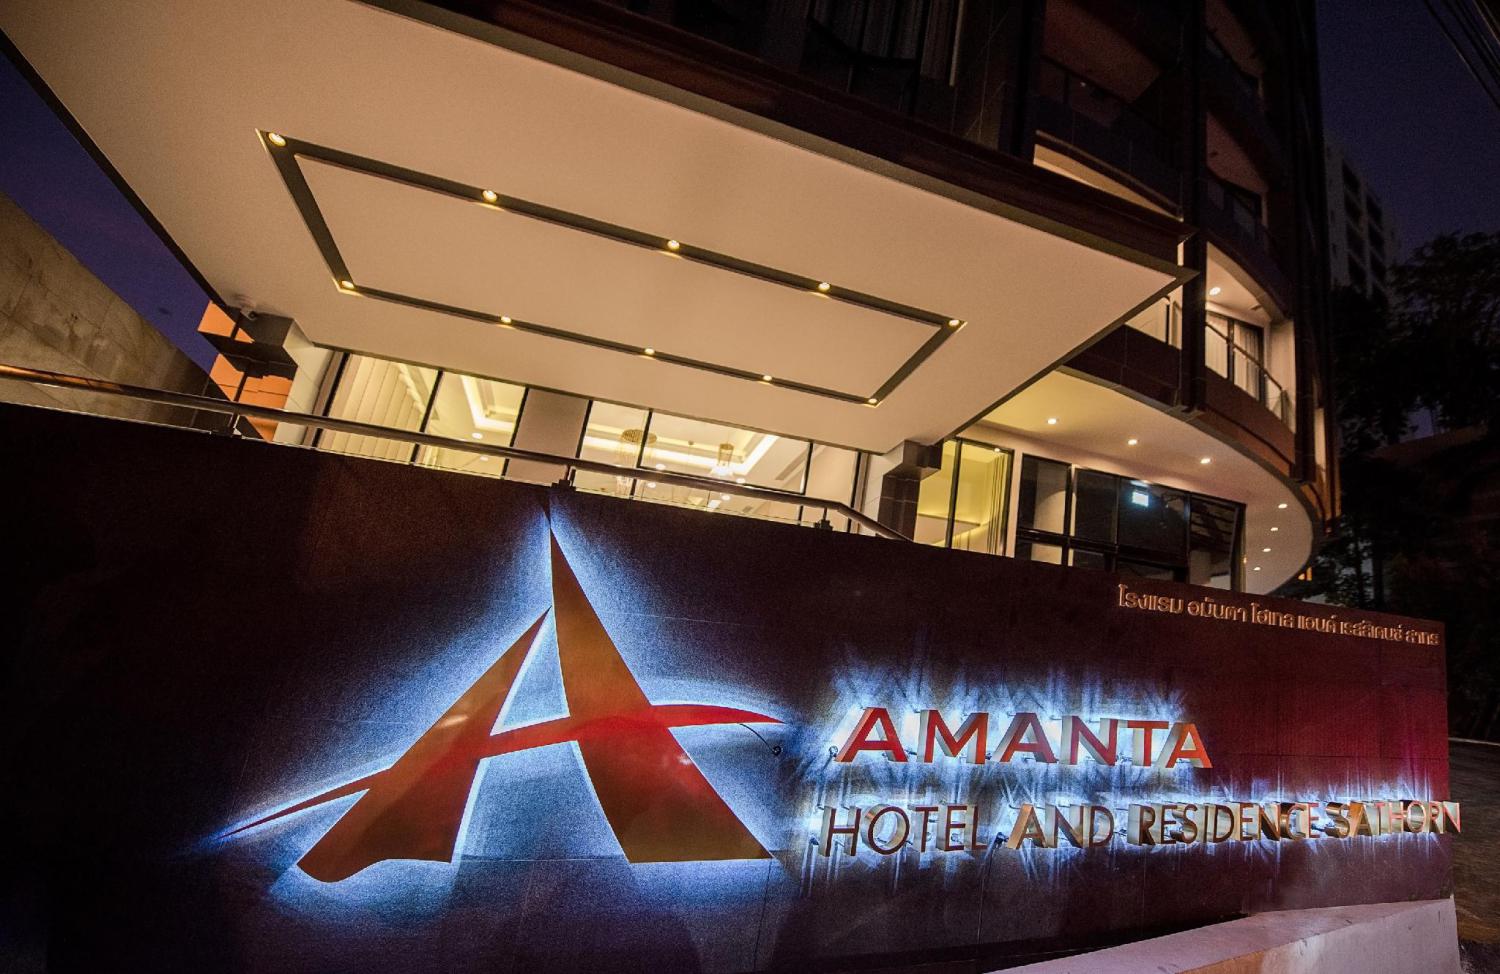 Amanta Hotel & Residence Sathorn - Image 2